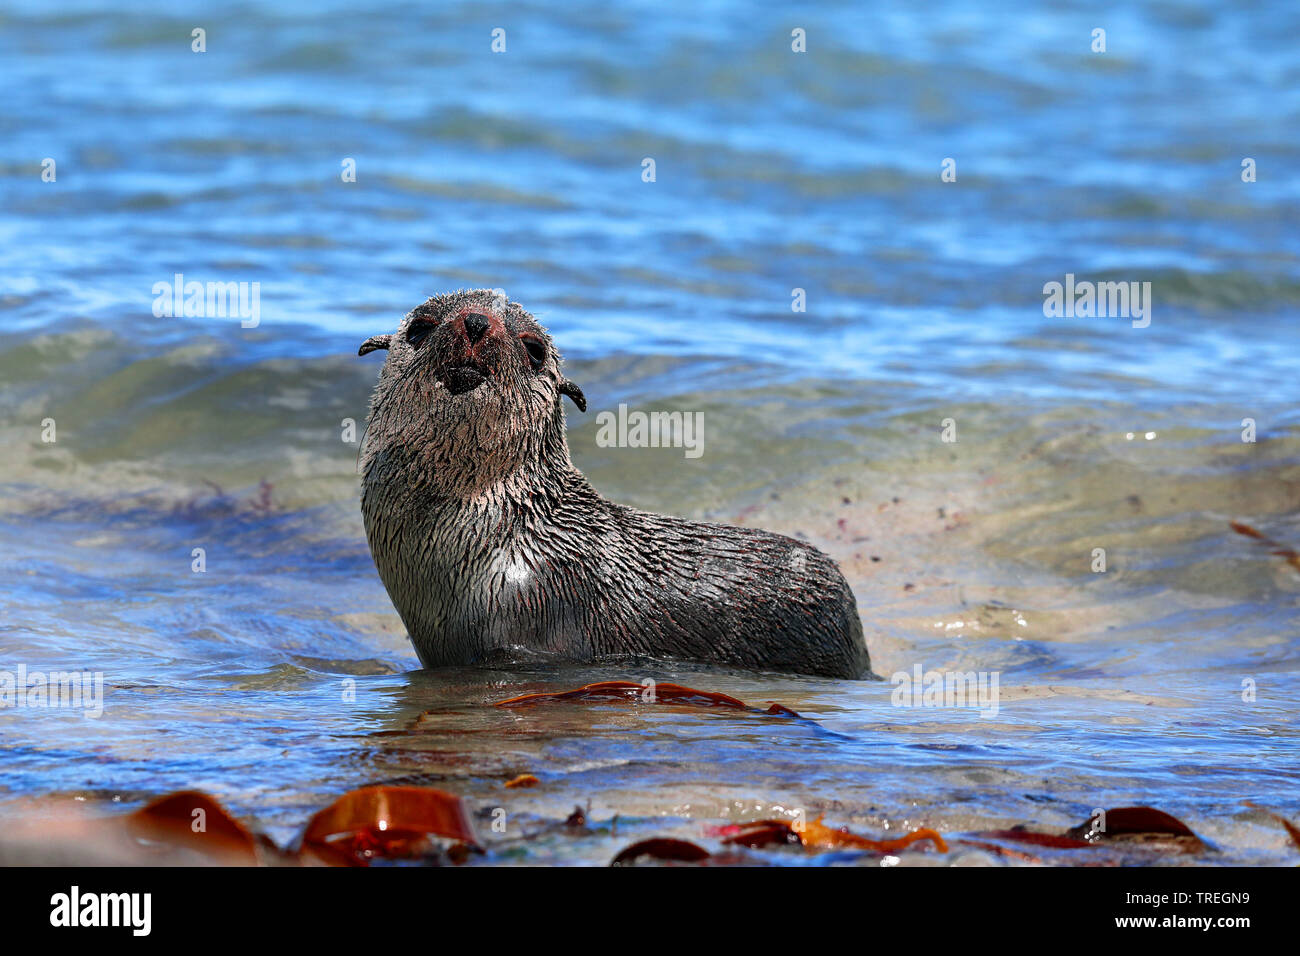 Afrikanische Clawless Otter (Aonyx capensis), im Wasser am Ufer, Südafrika, Western Cape, Kap der Guten Hoffnung Nationalpark Stockfoto